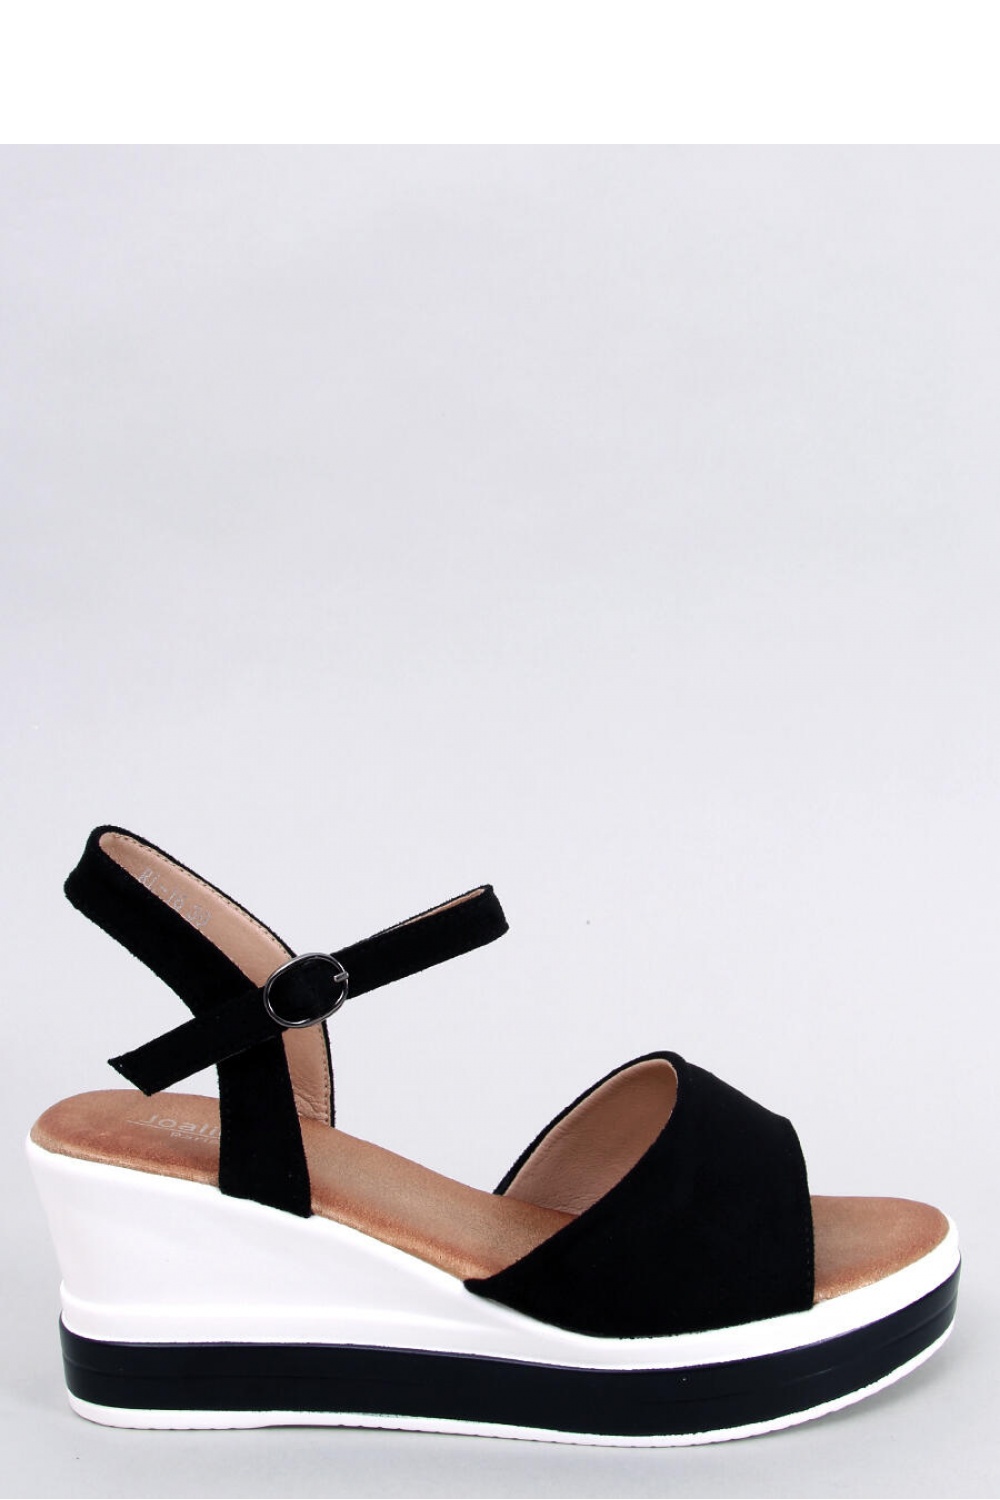  Heel sandals model 179407 Inello  black